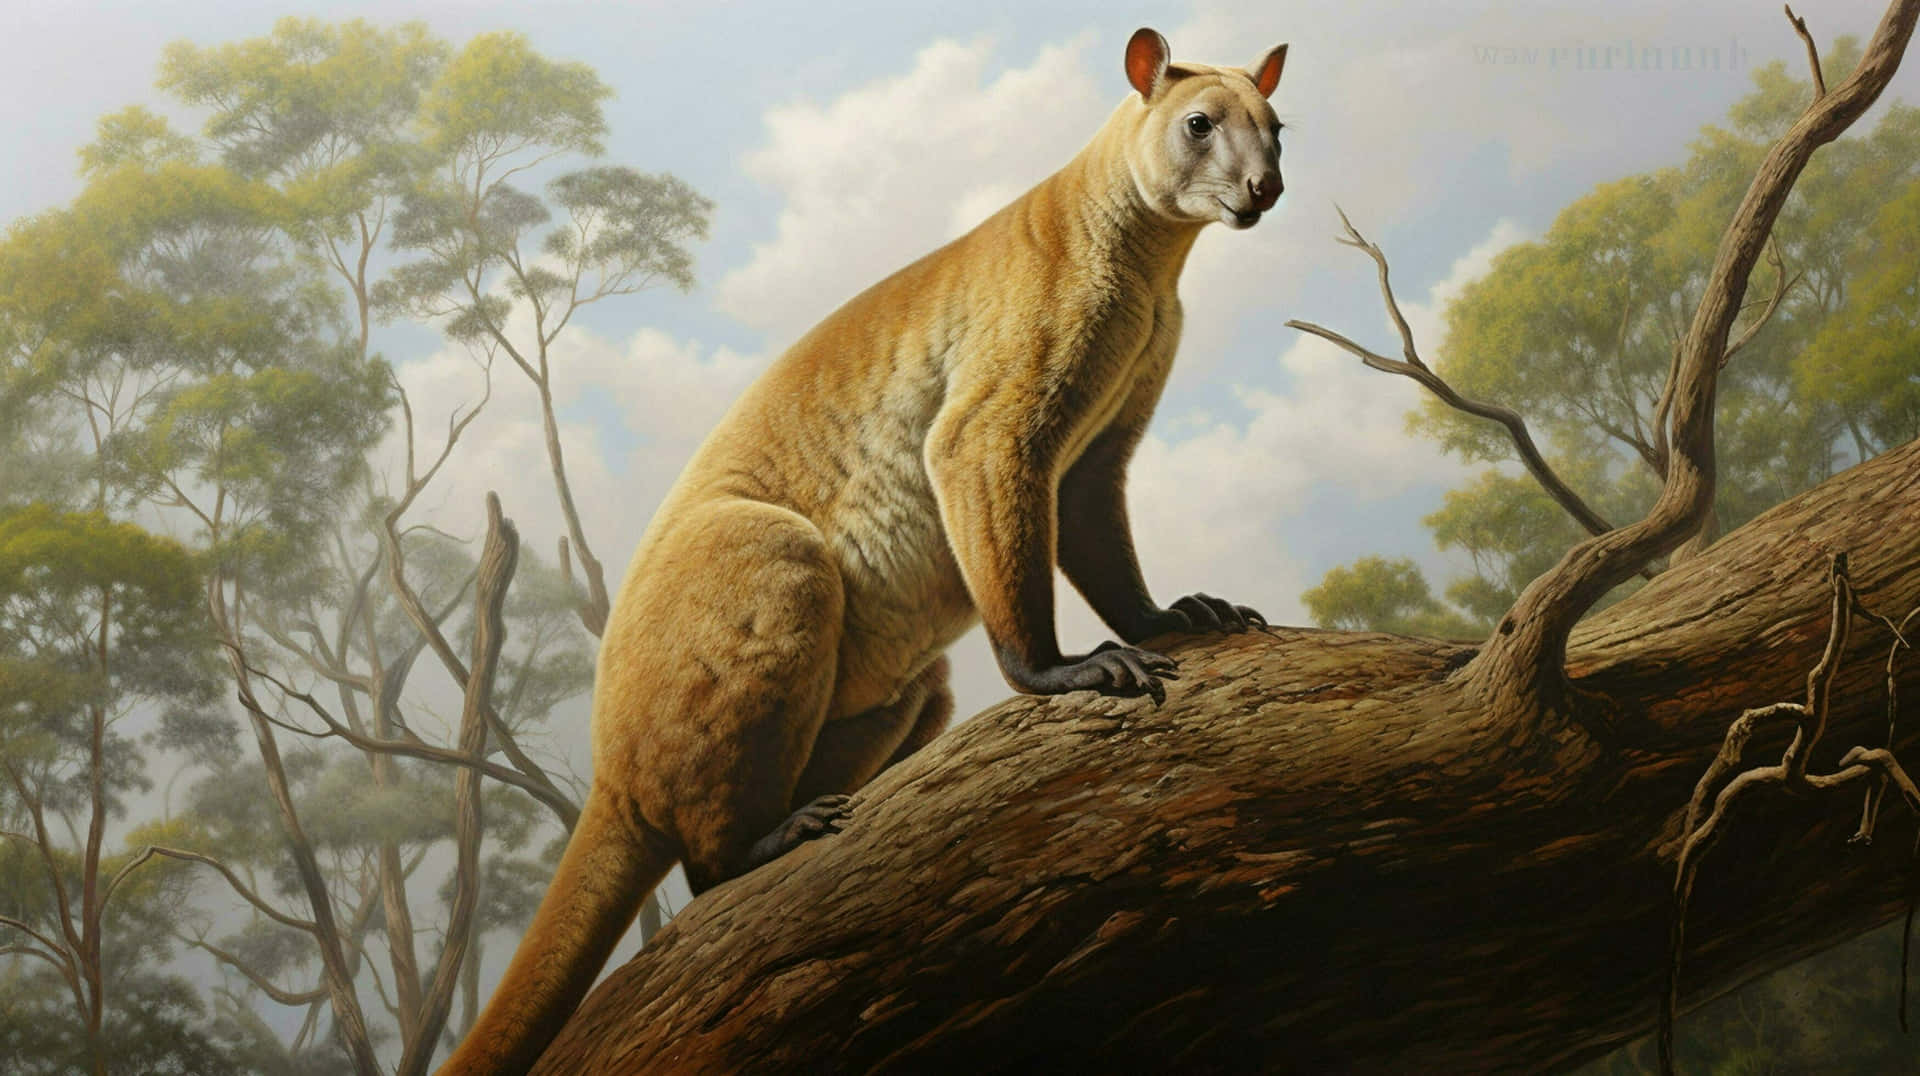 Tree Kangarooin Natural Habitat Wallpaper